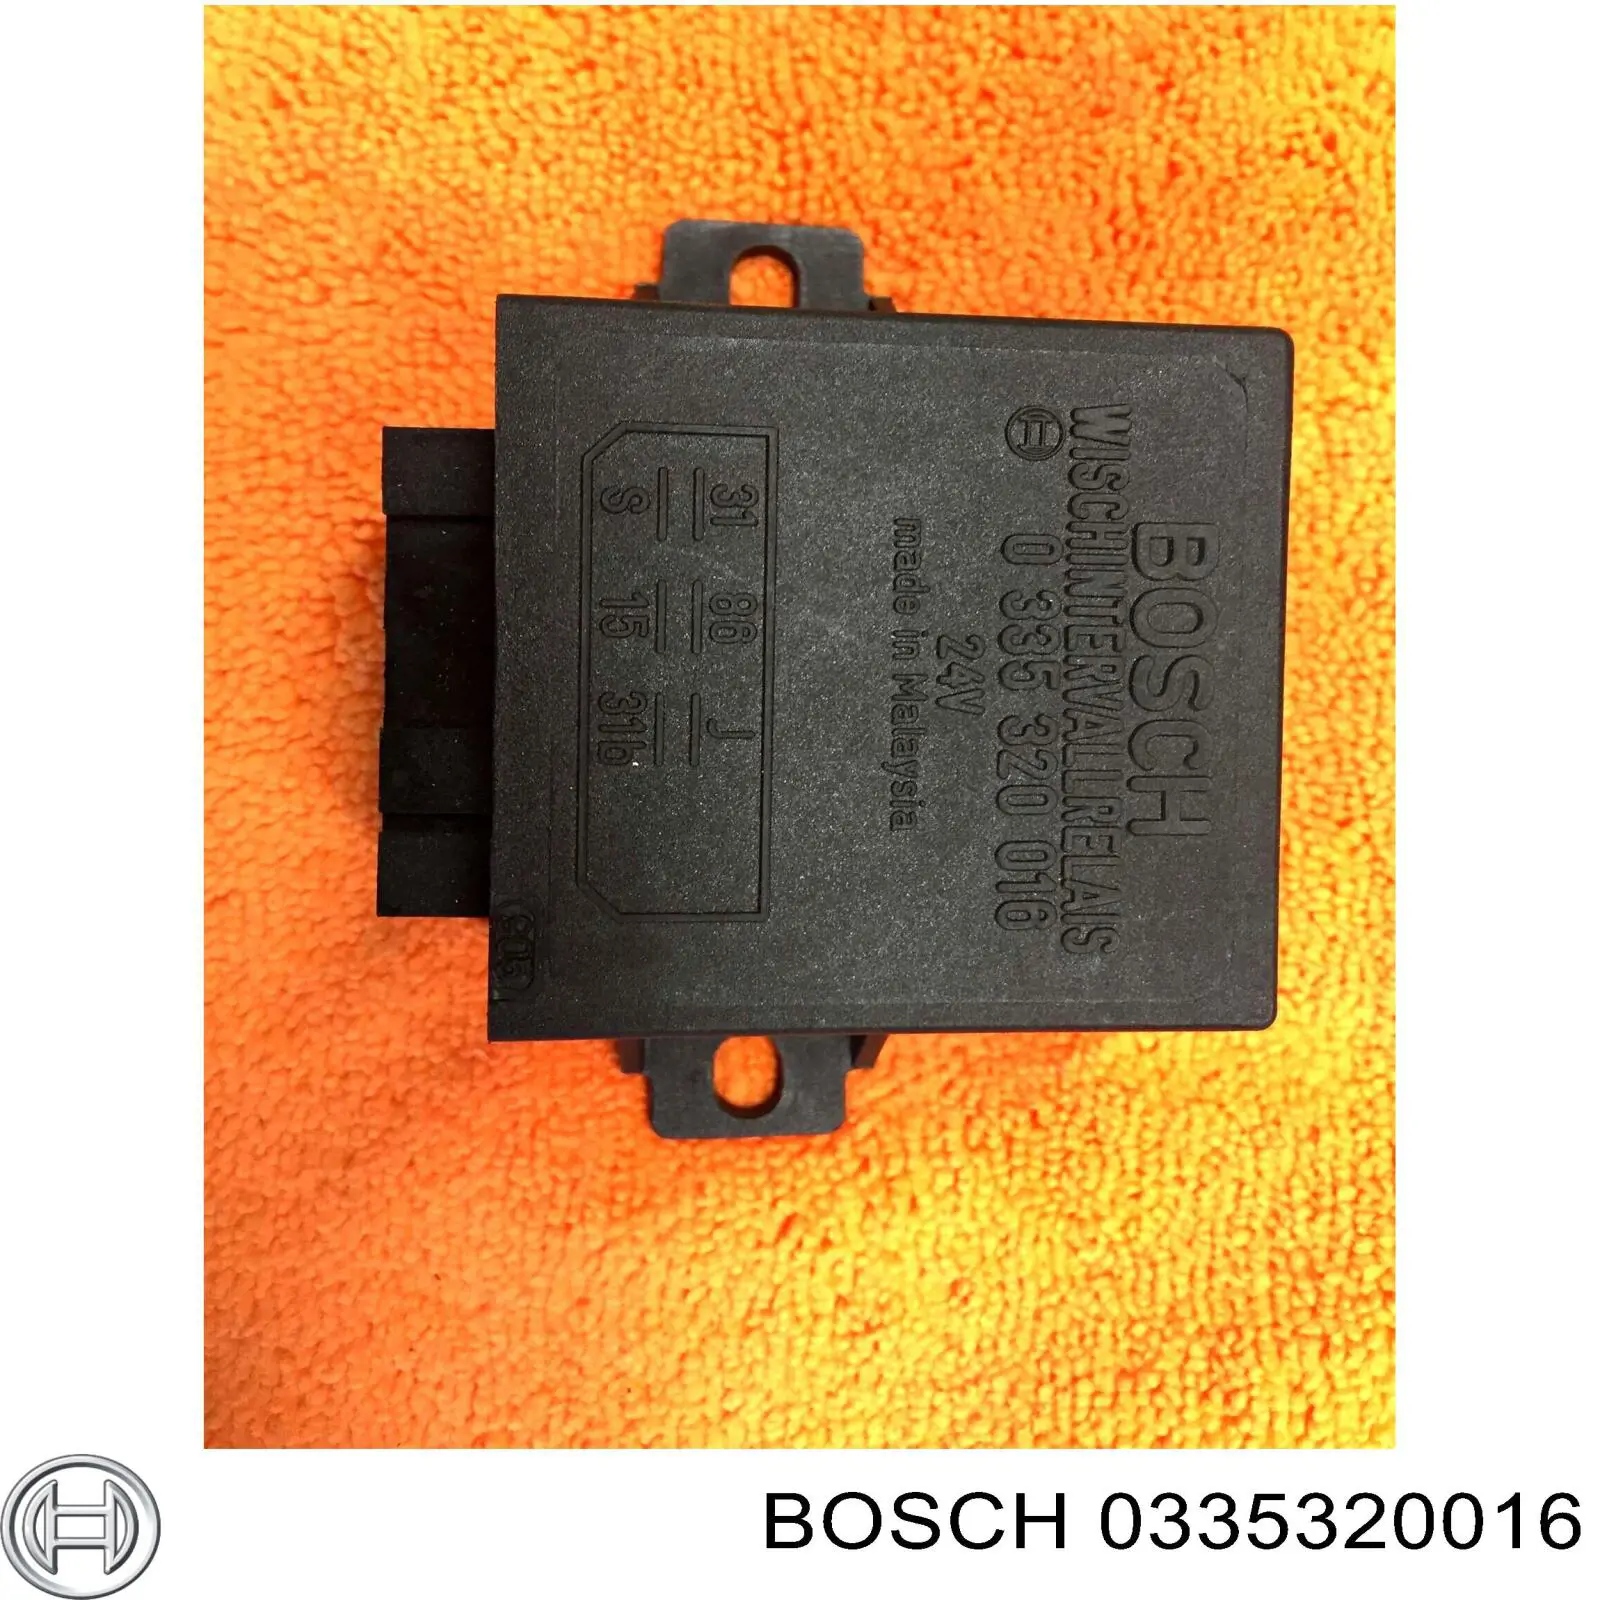 0335320016 Bosch relé de intermitencia del limpiaparabrisas